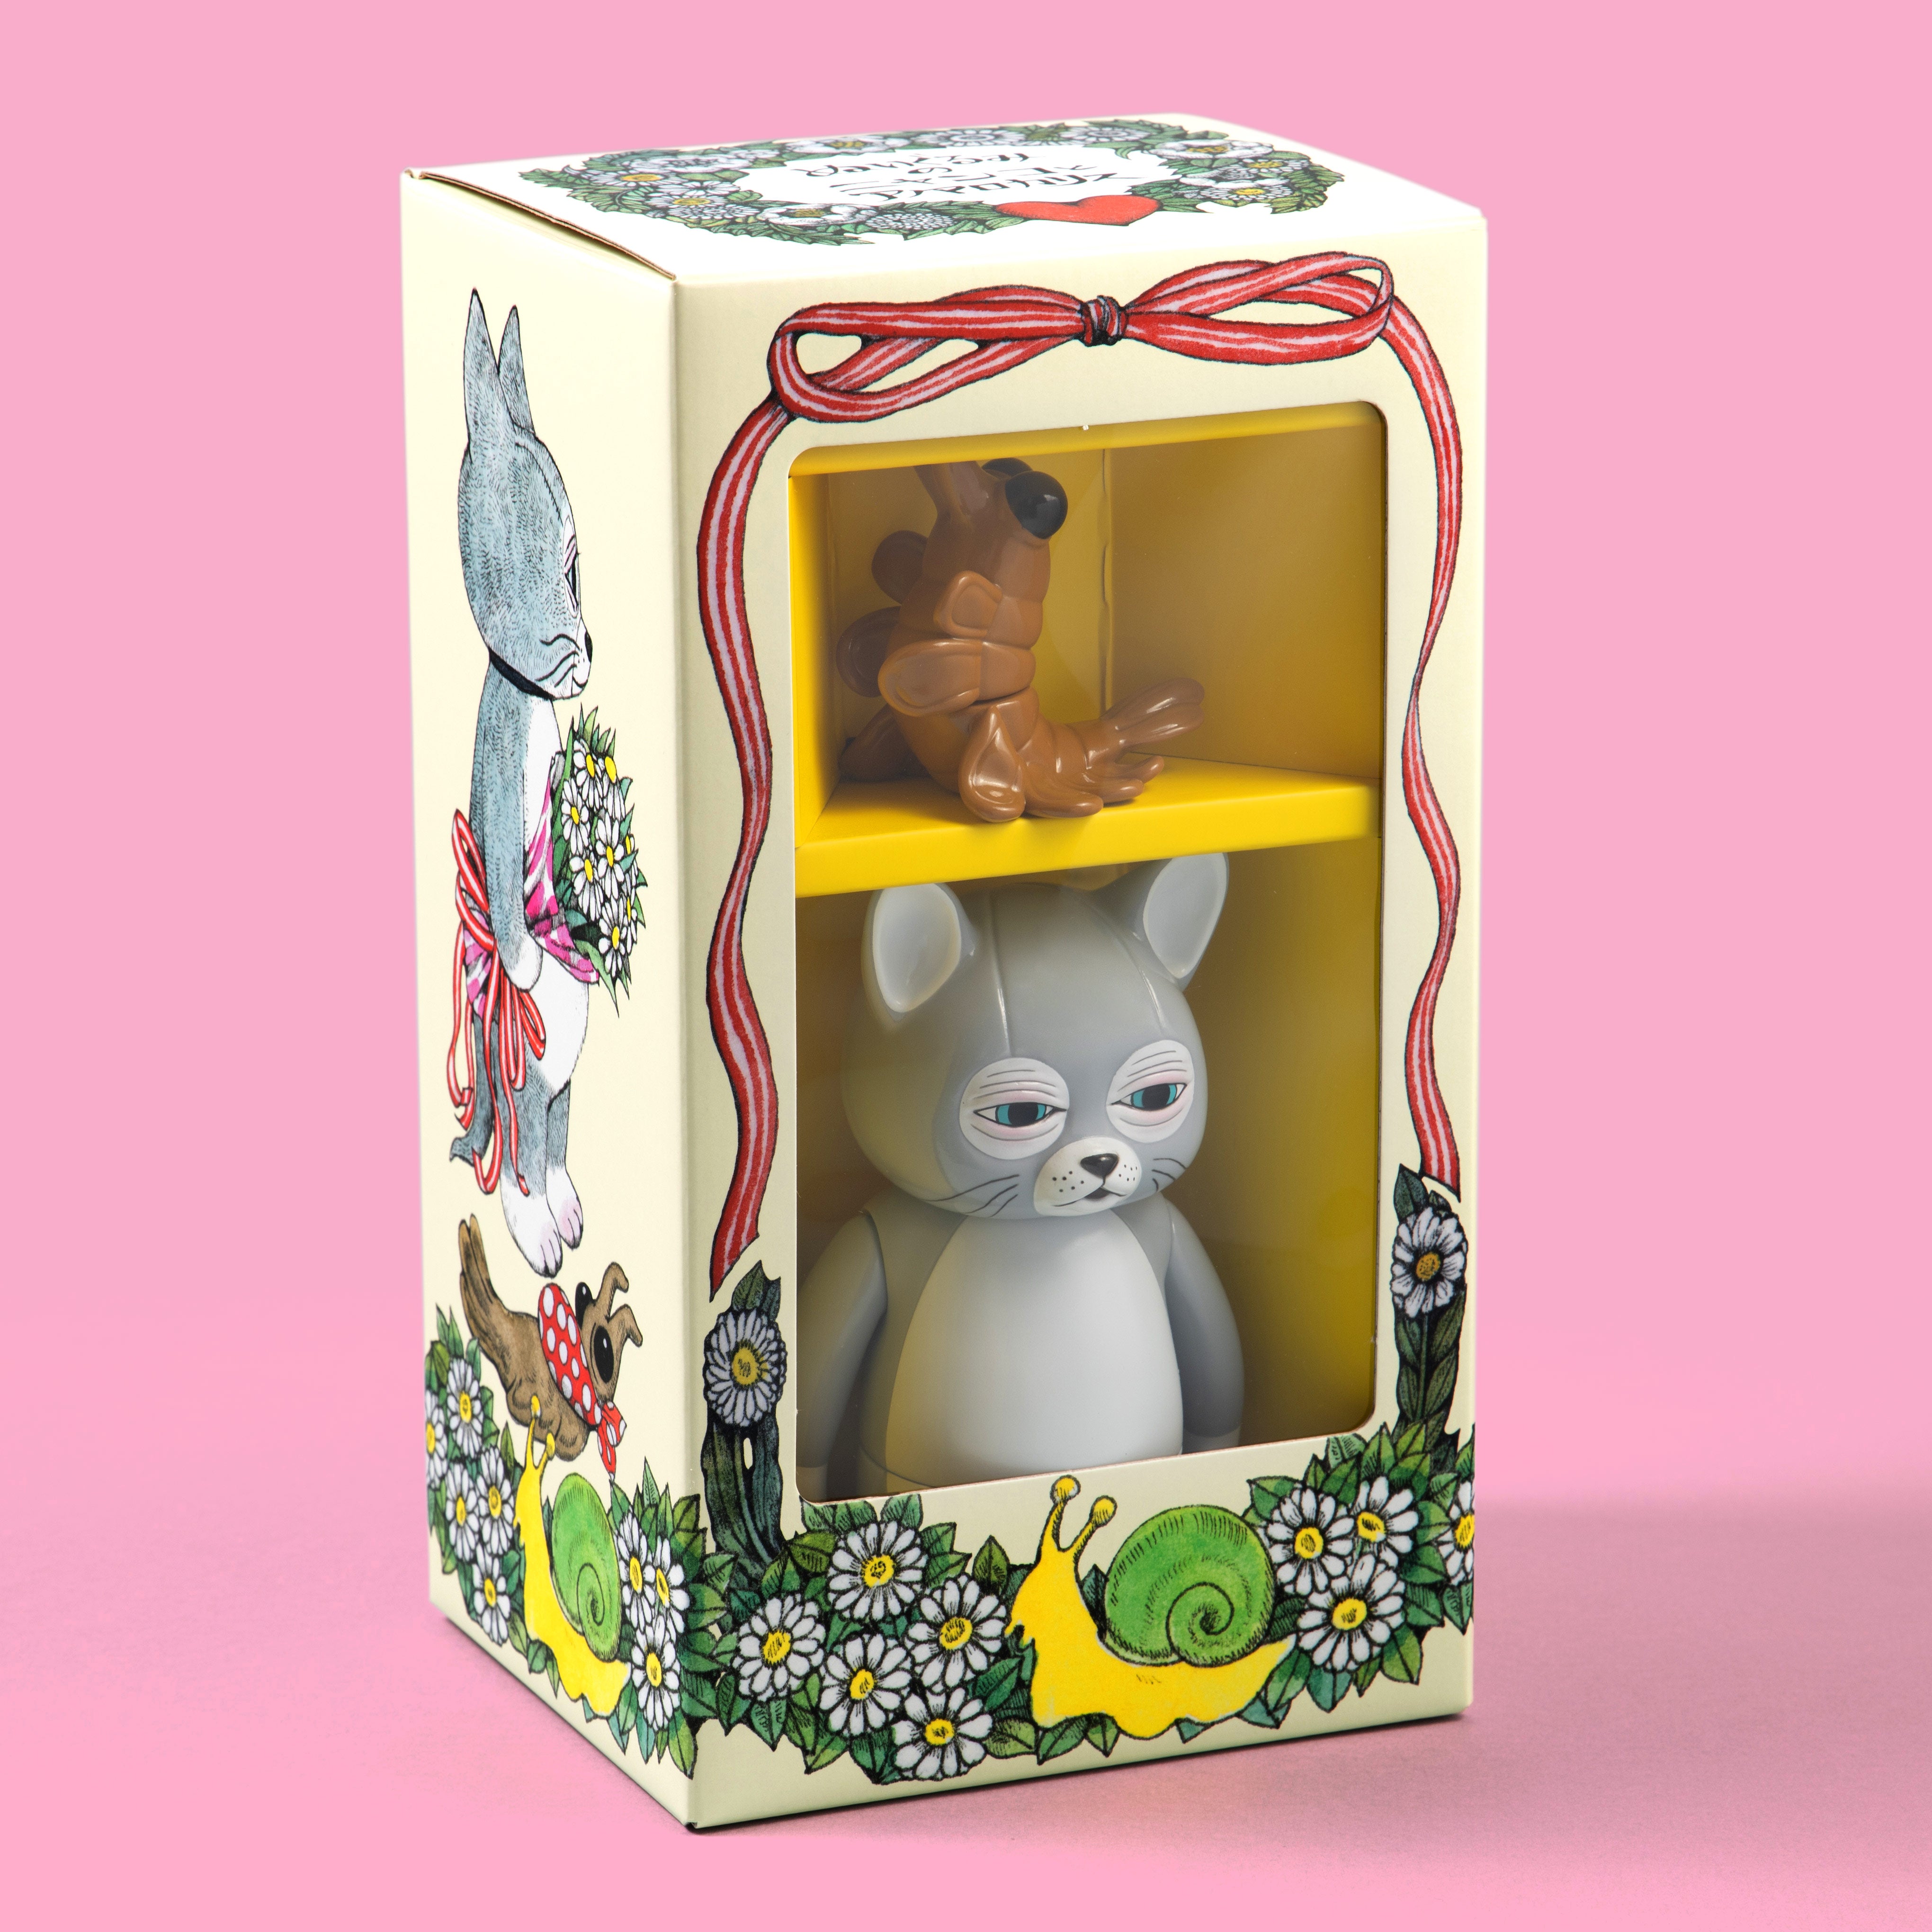 ニャンコとアノマロのお人形 – ボリス雑貨店